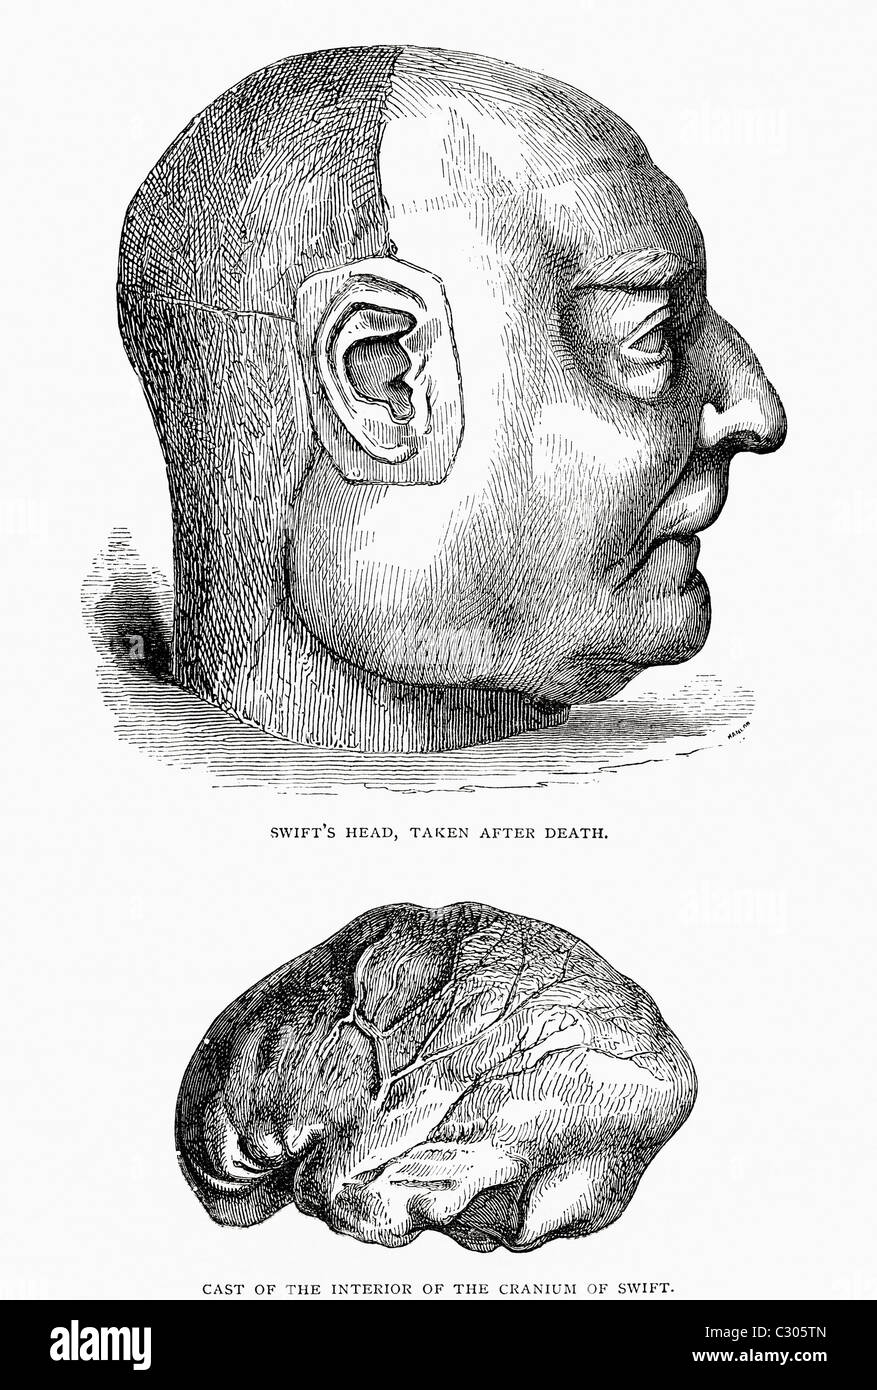 Swift testa di presa dopo la morte, e cast dell'interno di Swift cranio. Da i viaggi di Gulliver pubblicato c.1875 Foto Stock